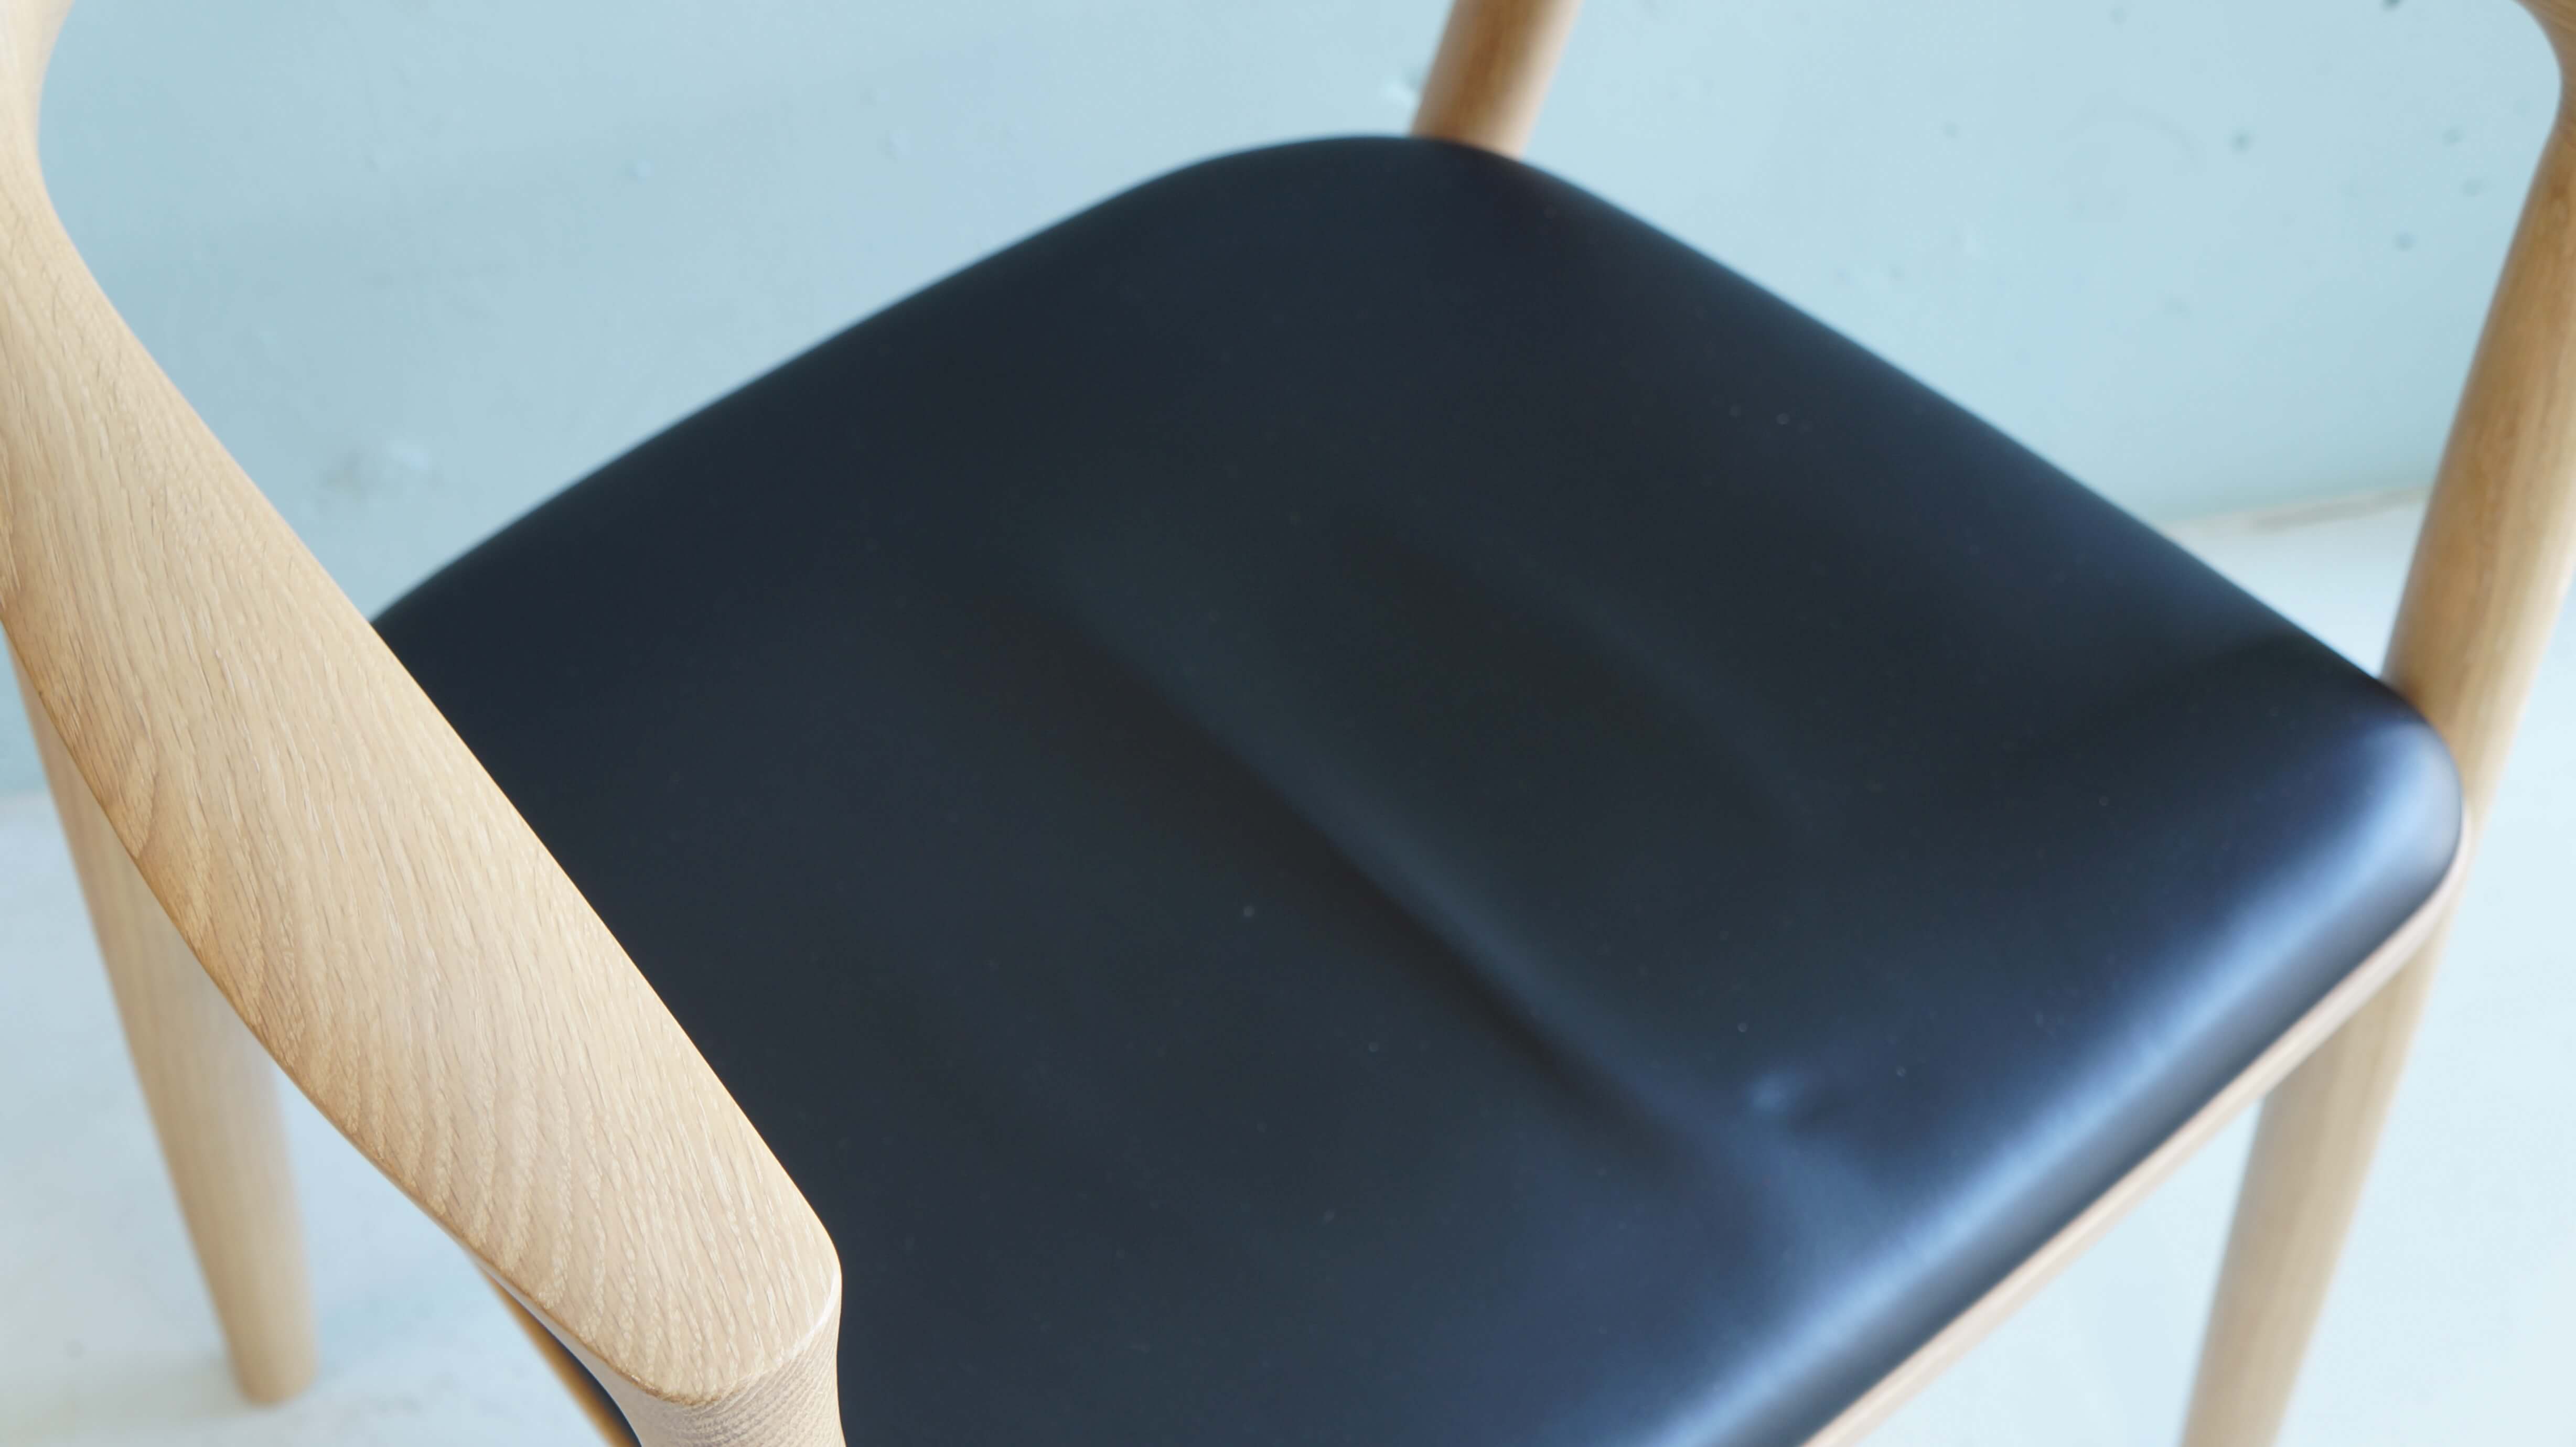 maruni collection arm chair HIROSHIMA design by NAOTO HUKASAWA / マルニ コレクション ヒロシマ アームチェア 深澤直人 デザイン